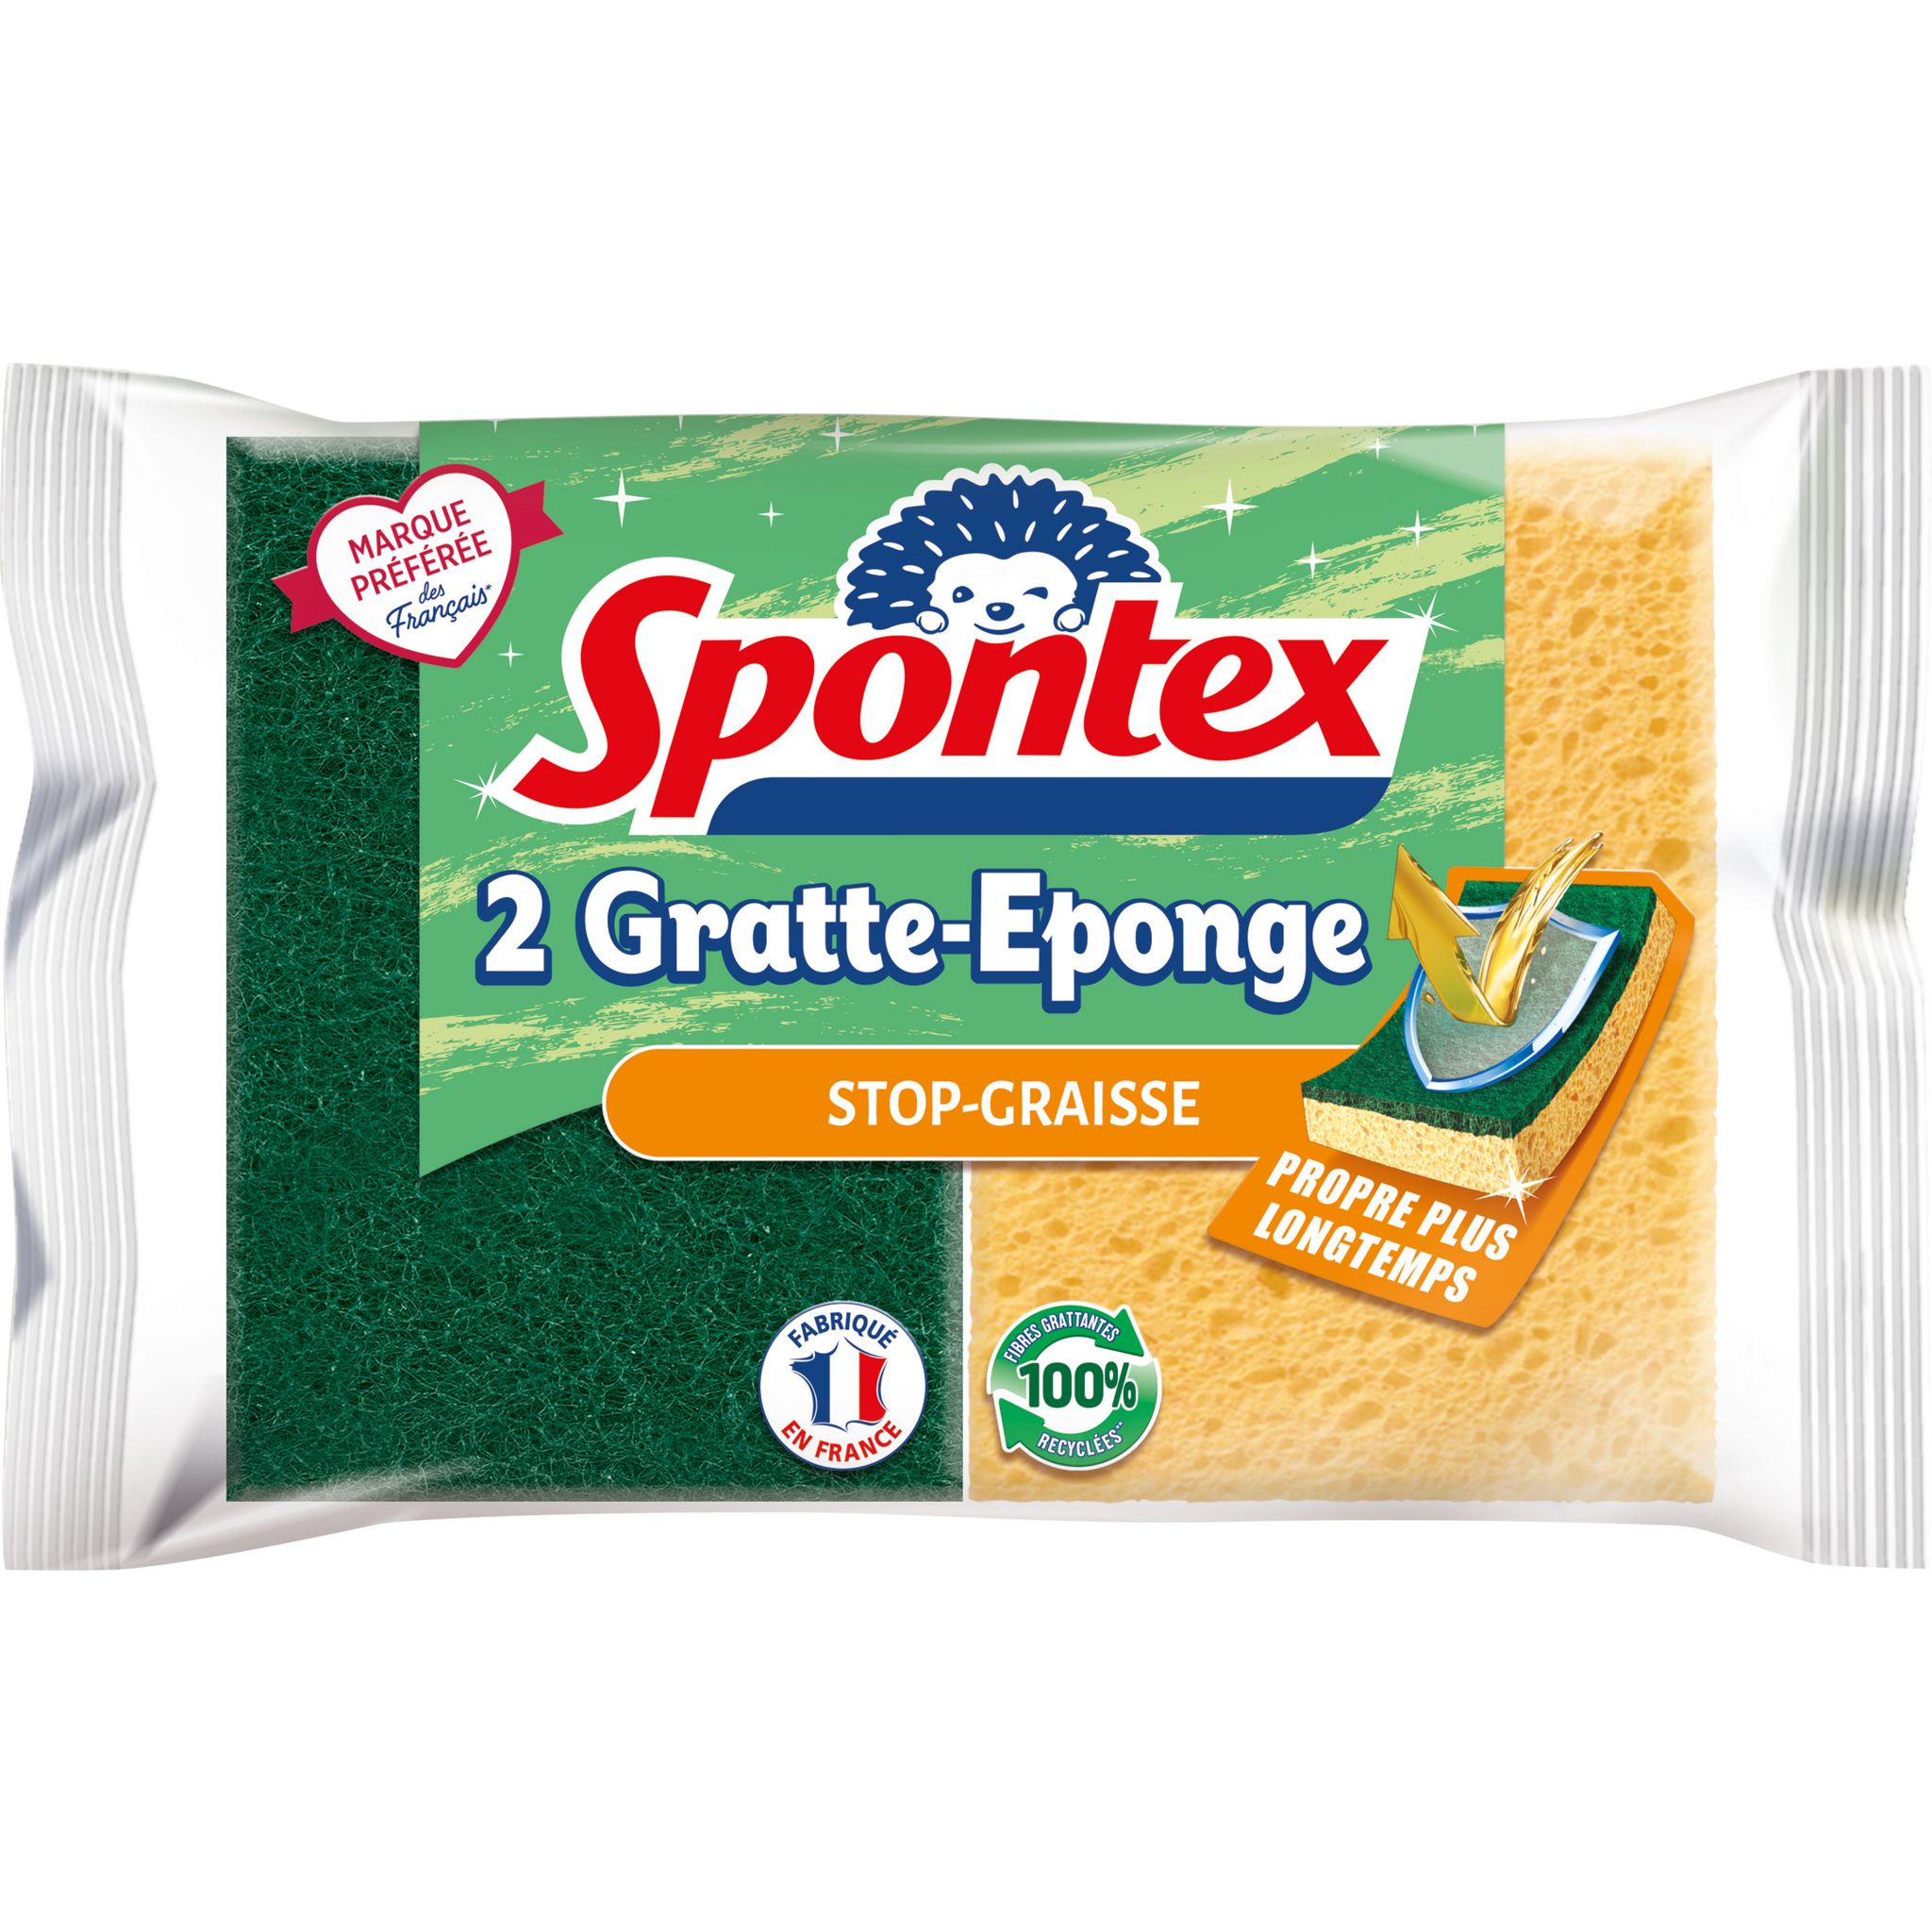 0€22 sur SPONTEX Lot de 12 packs de 2 Gratte-Eponge Stop-Graisse